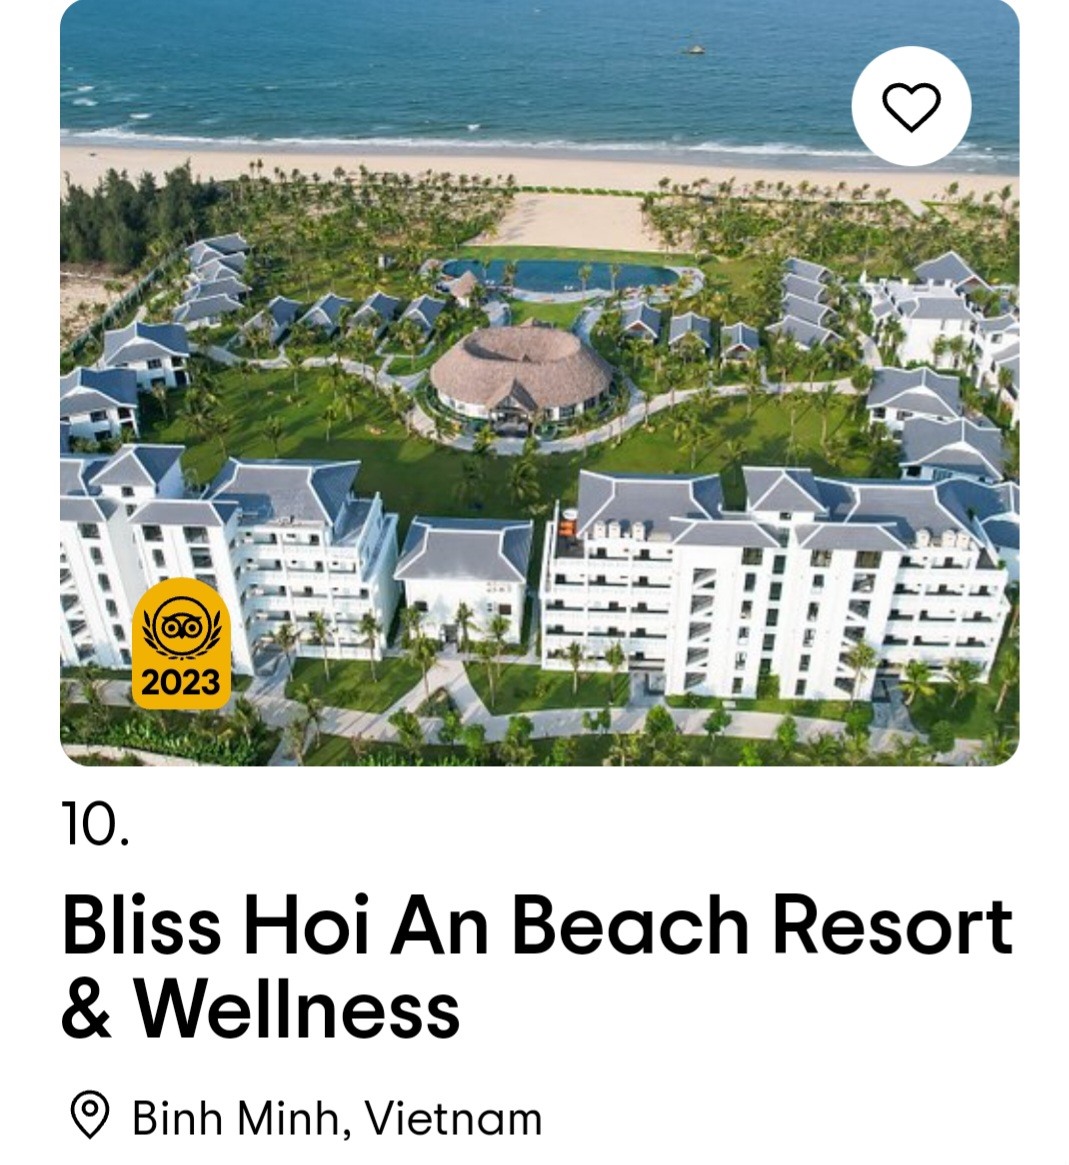 Một khu nghỉ dưỡng ở Thăng Bình được vinh danh "khách sạn mới hấp dẫn nhất toàn cầu"